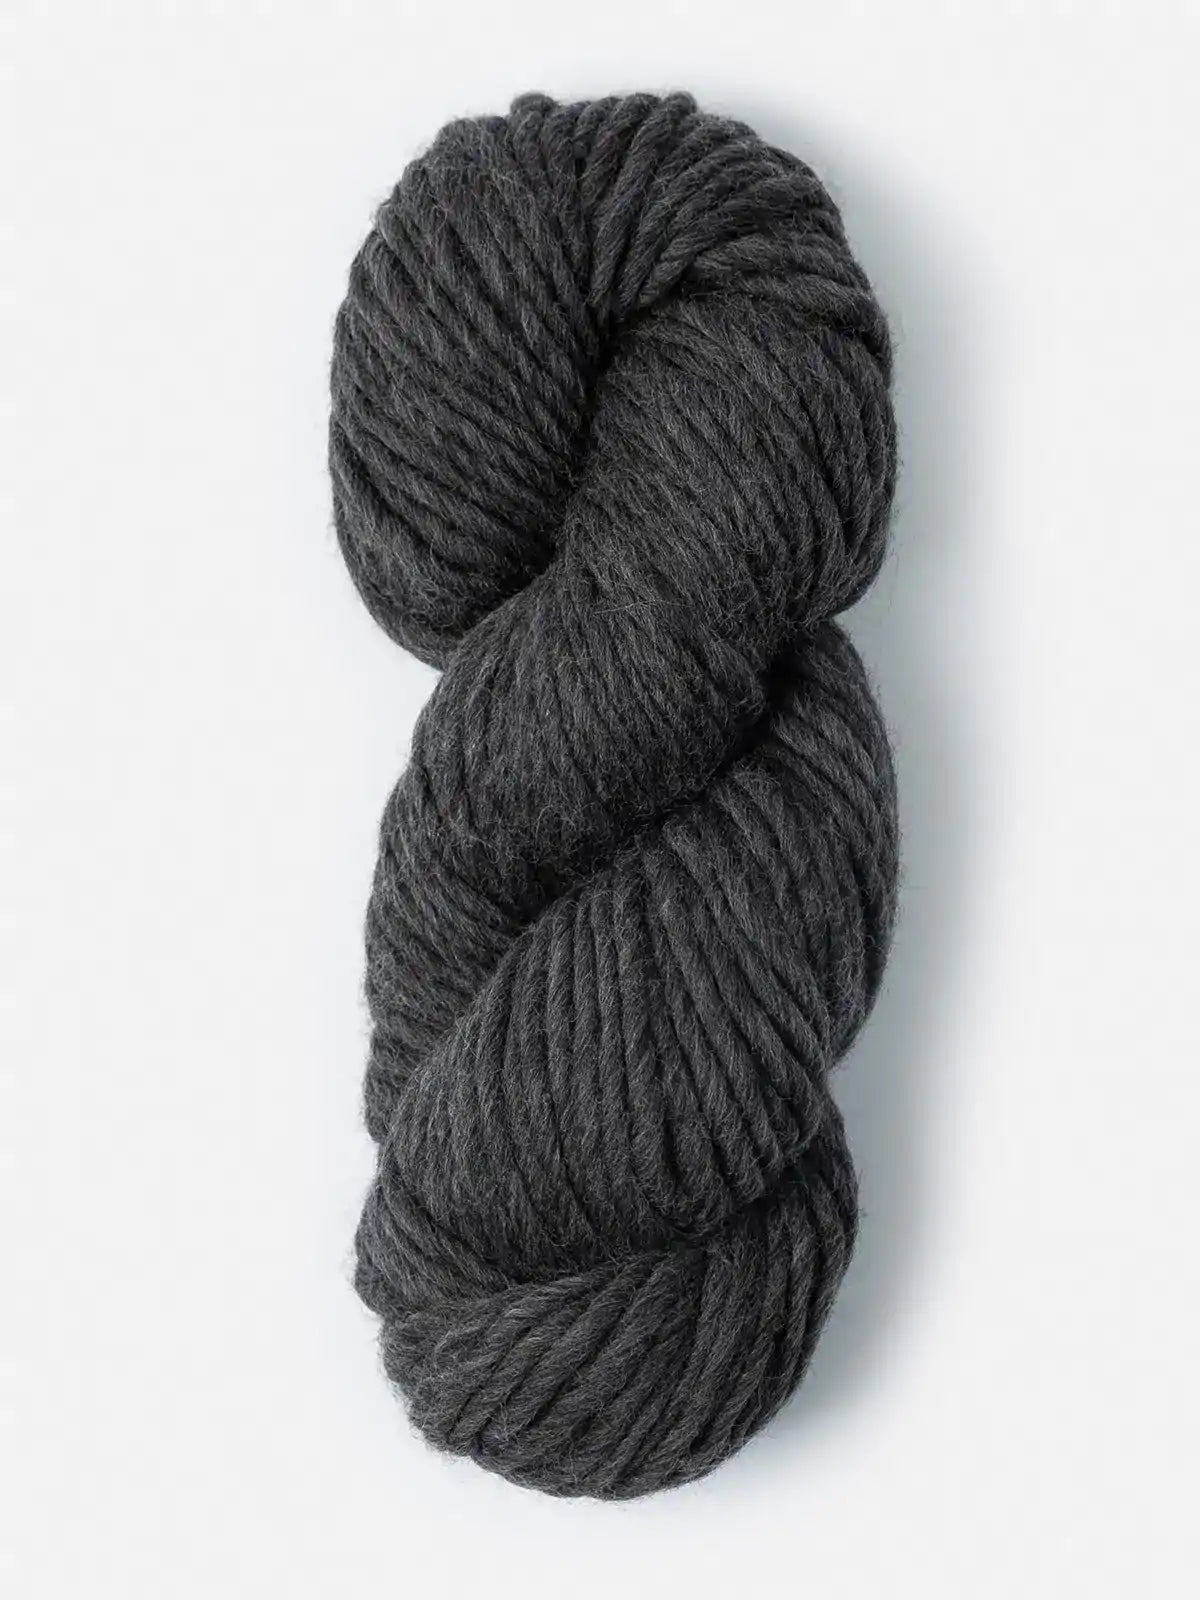 Make Super Bulky Yarn, Highland Wool